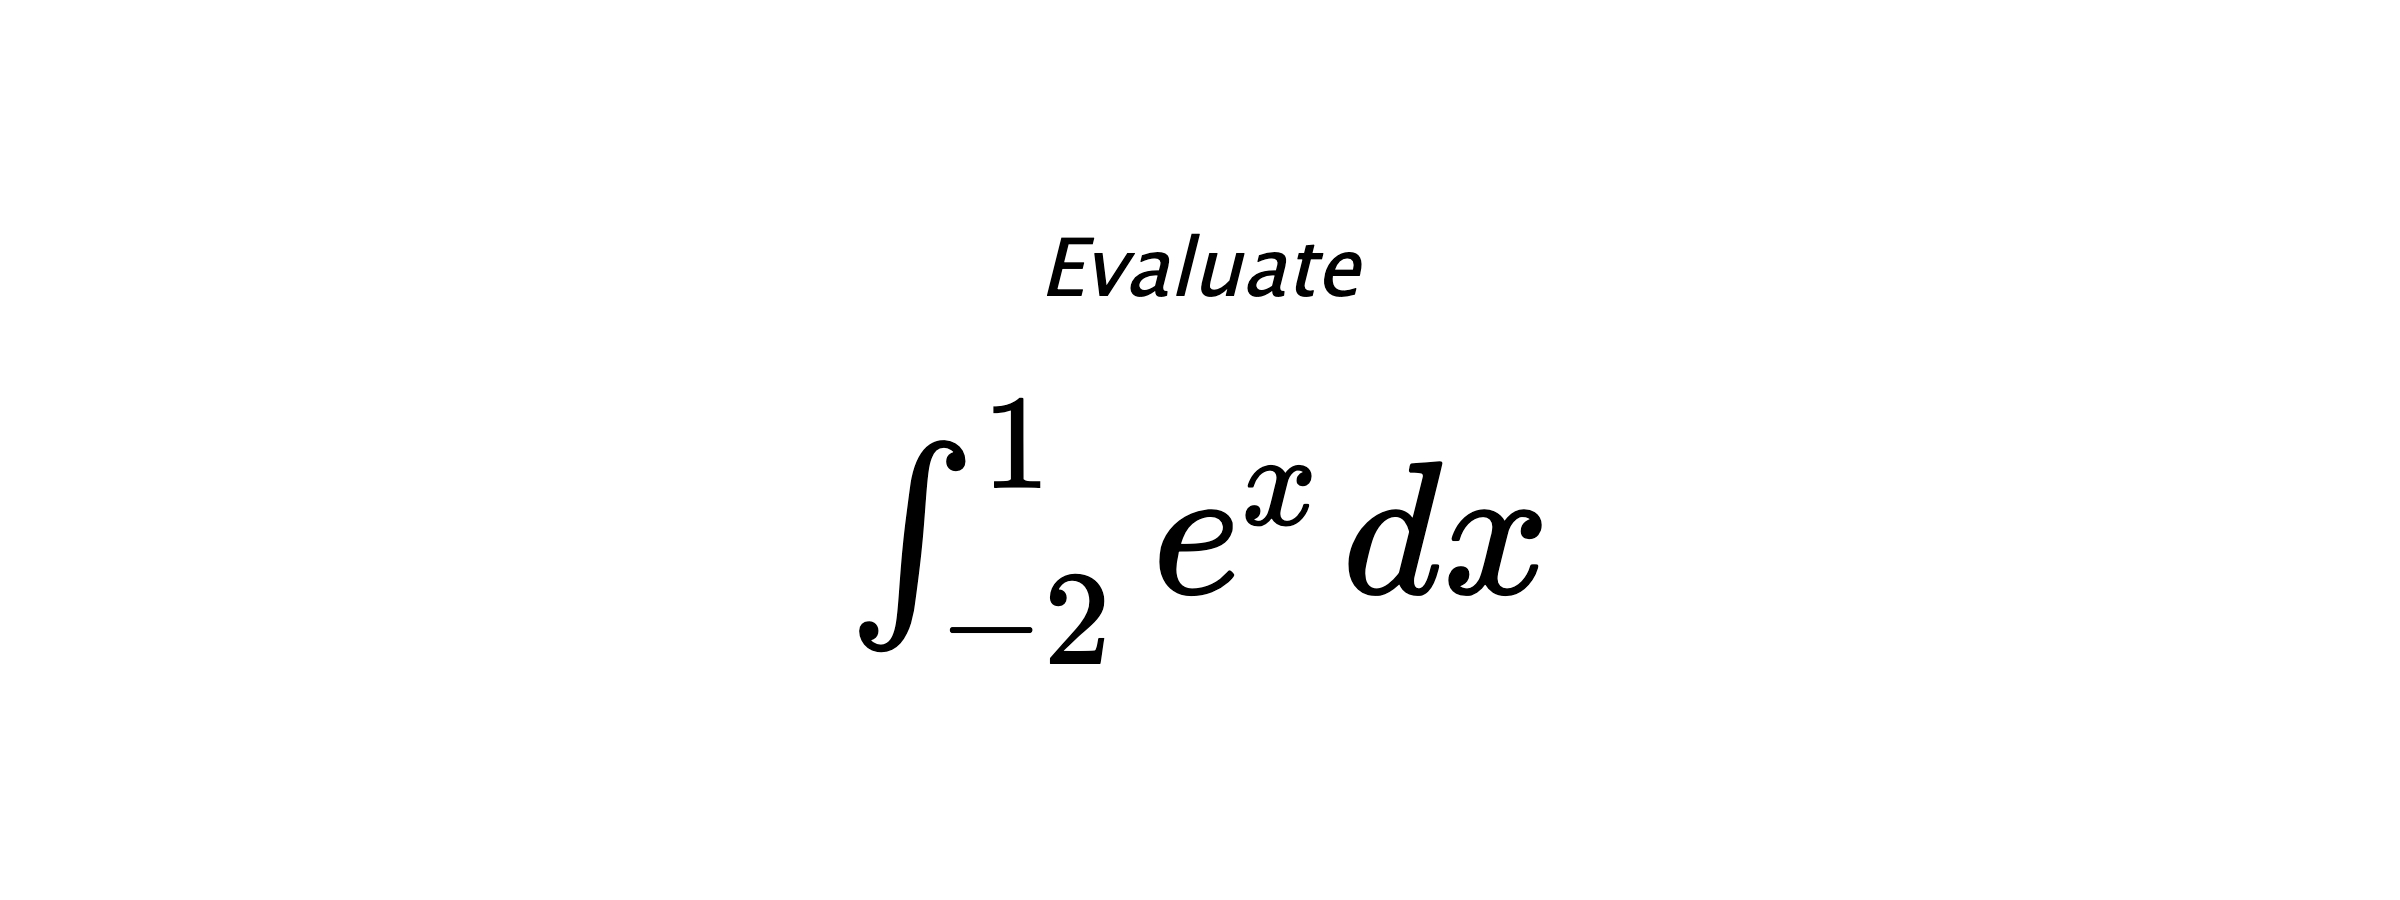 Evaluate $ \int_{-2}^{1} e^{x} \hspace{0.2cm} dx $